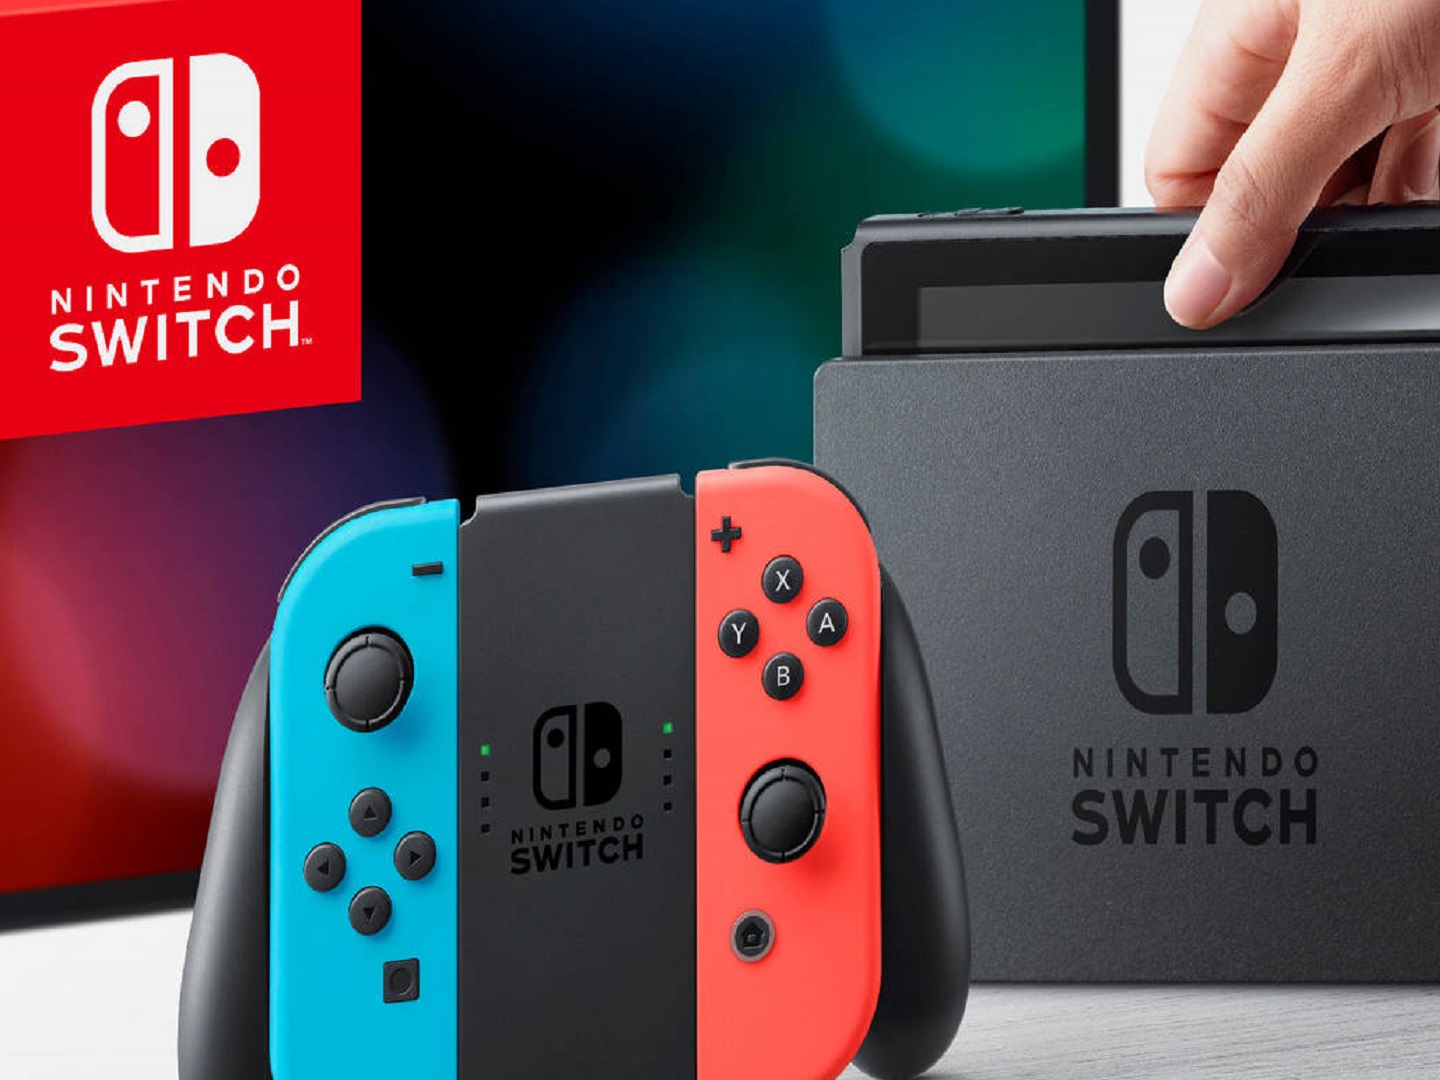 Nintendo switch life. Nintendo Switch 2. Nintendo Switch Black. Нинтендо свитч 2 в тинкеркат. Nintendo Switch первый 2020.